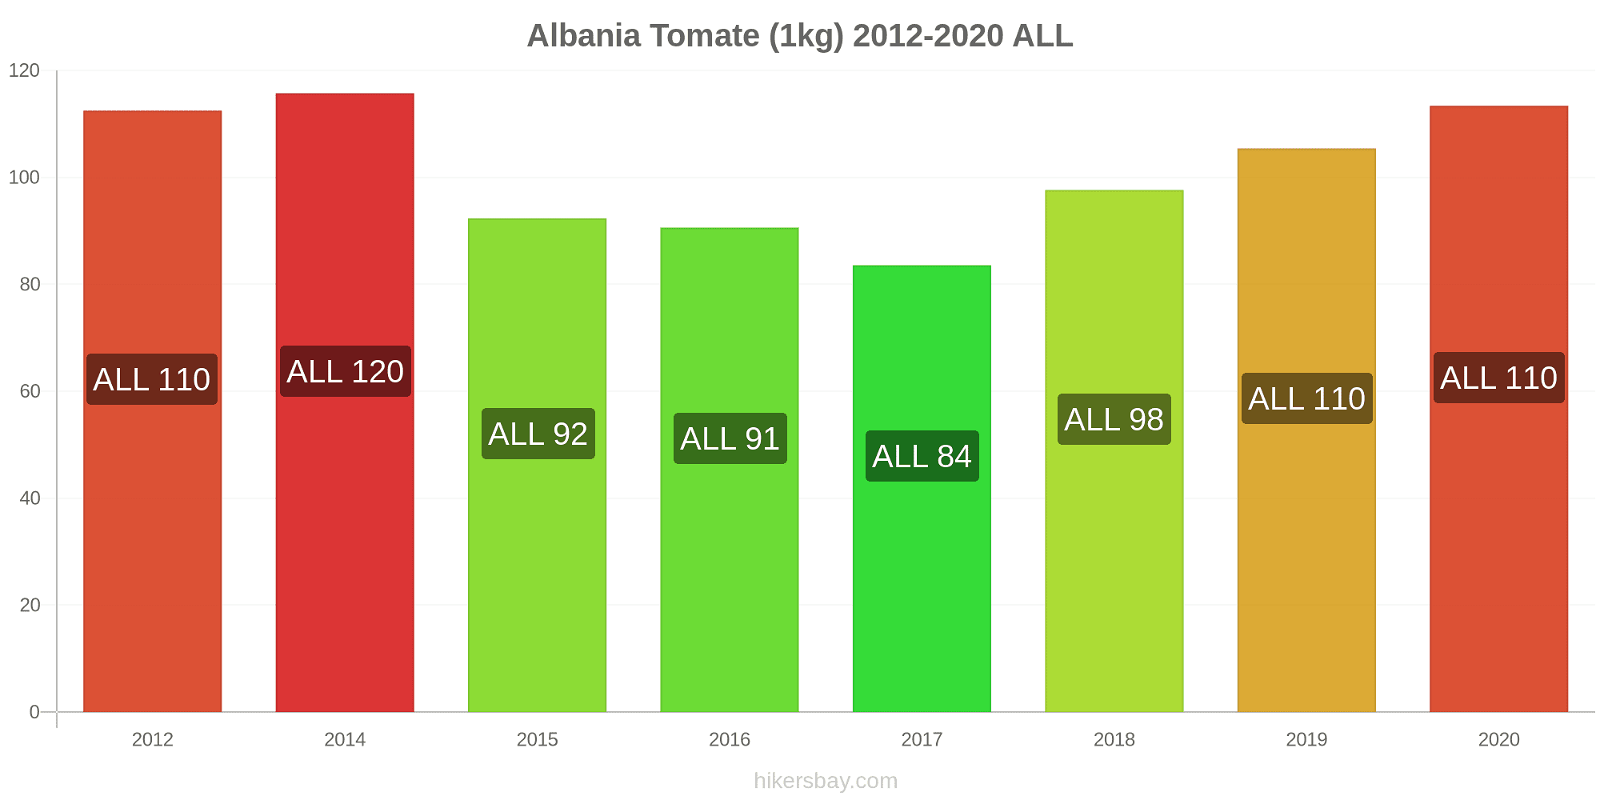 Albania cambios de precios Tomate (1kg) hikersbay.com